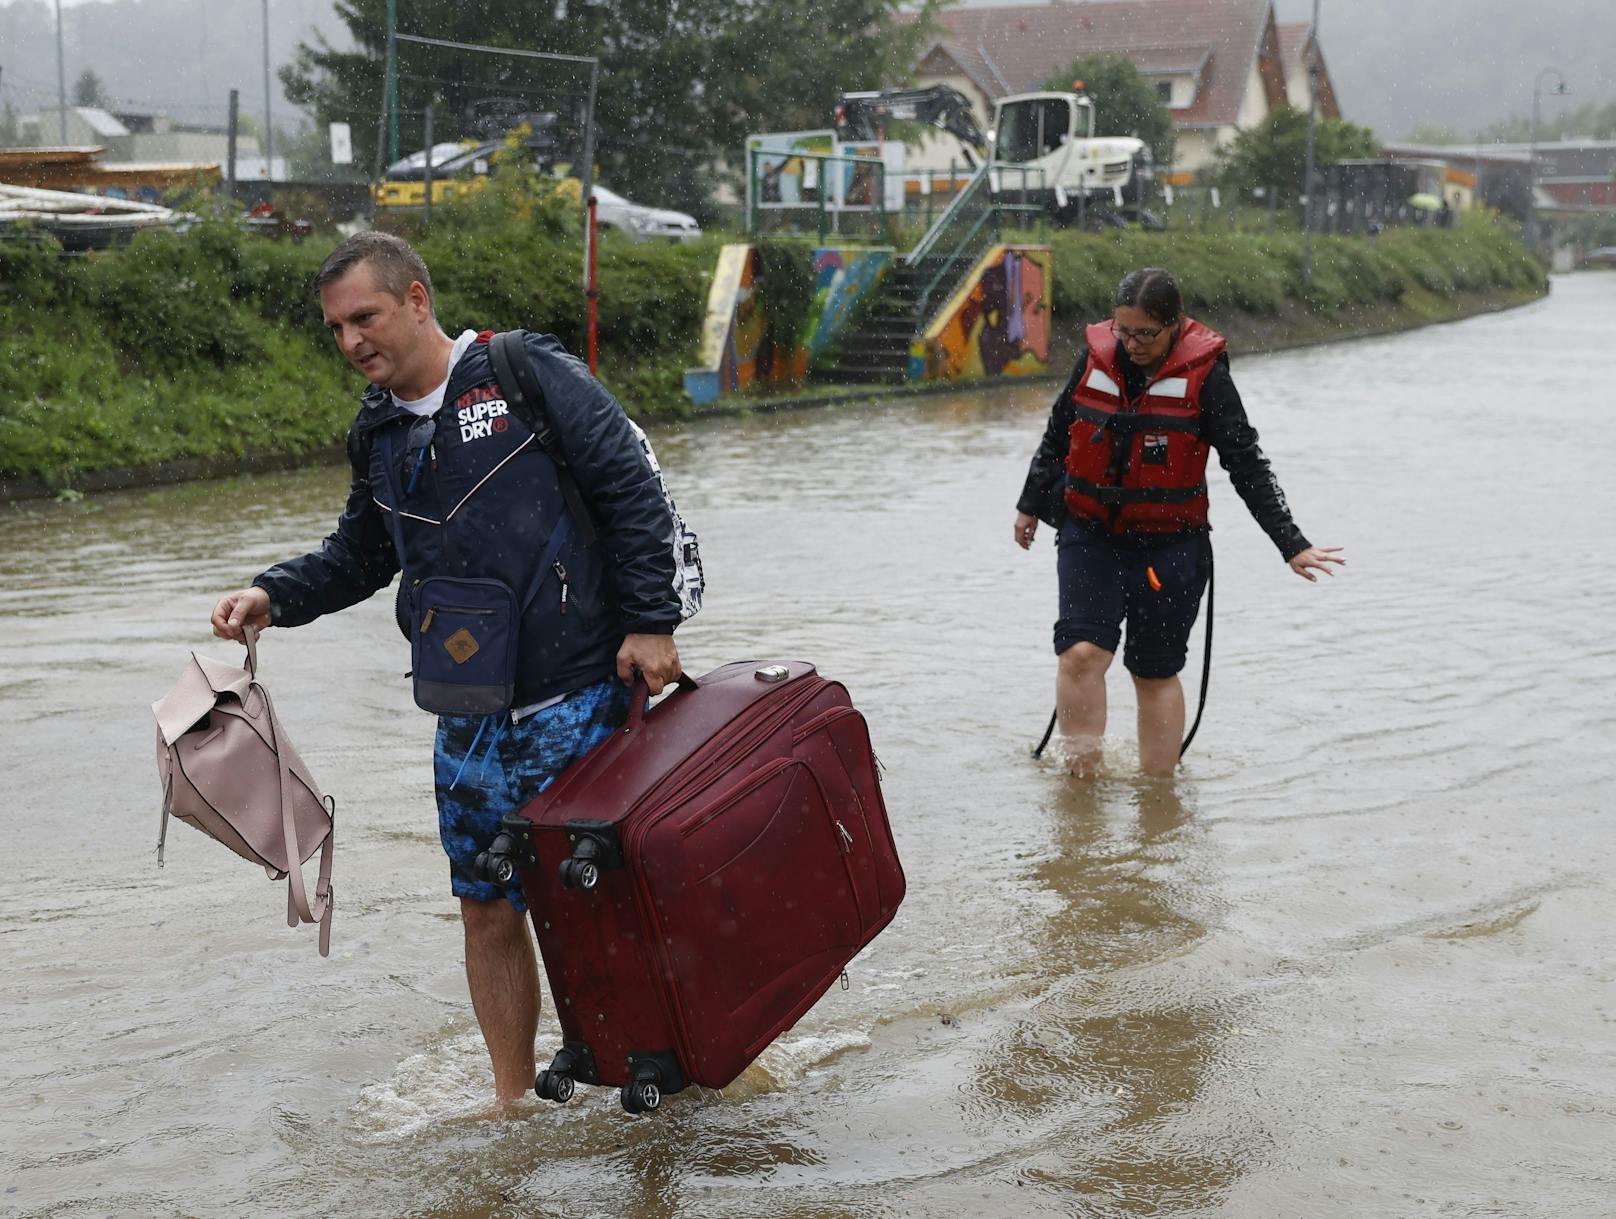 Hochwasser-Opfer in Not: So können "Heute"-Leser helfen